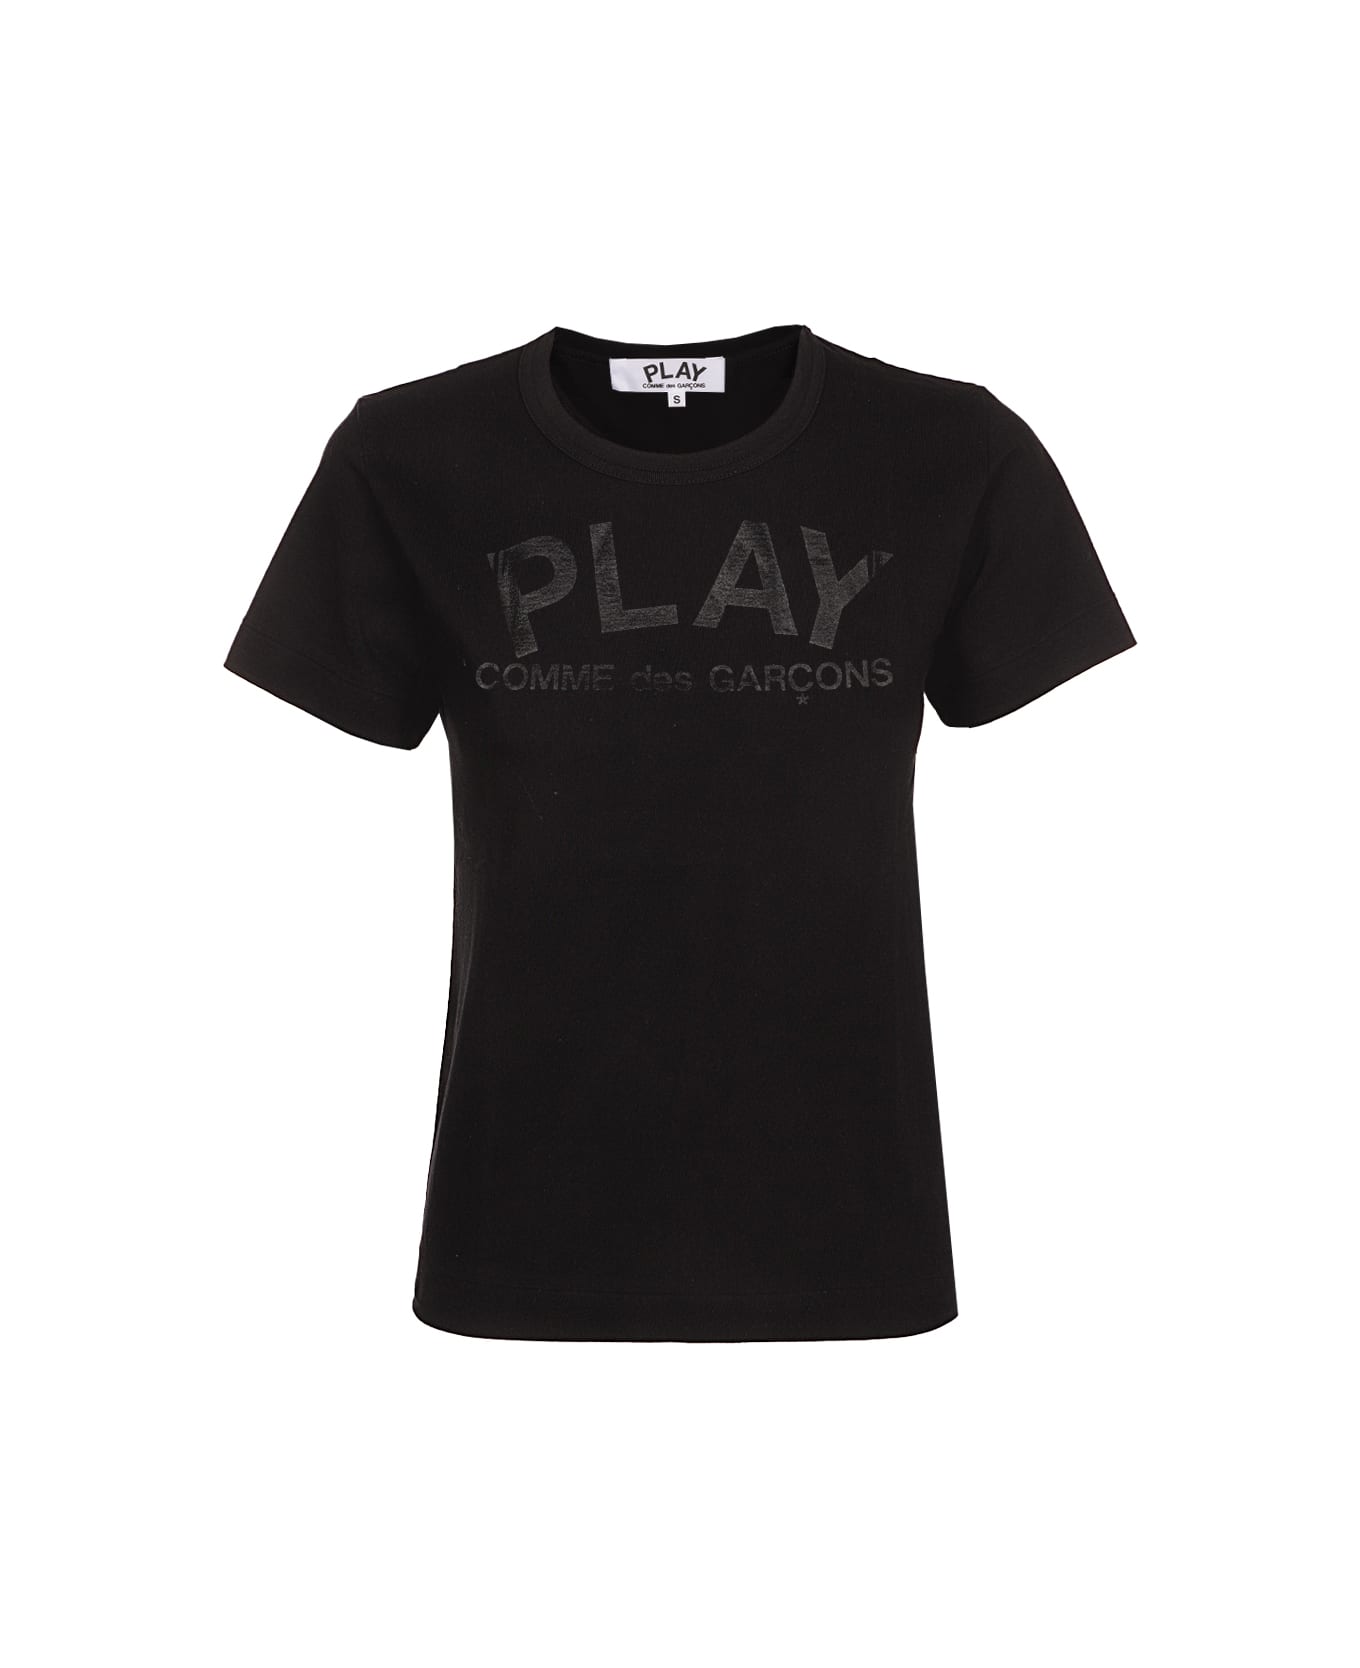 Comme des Garçons Play Play T-shirt - 1